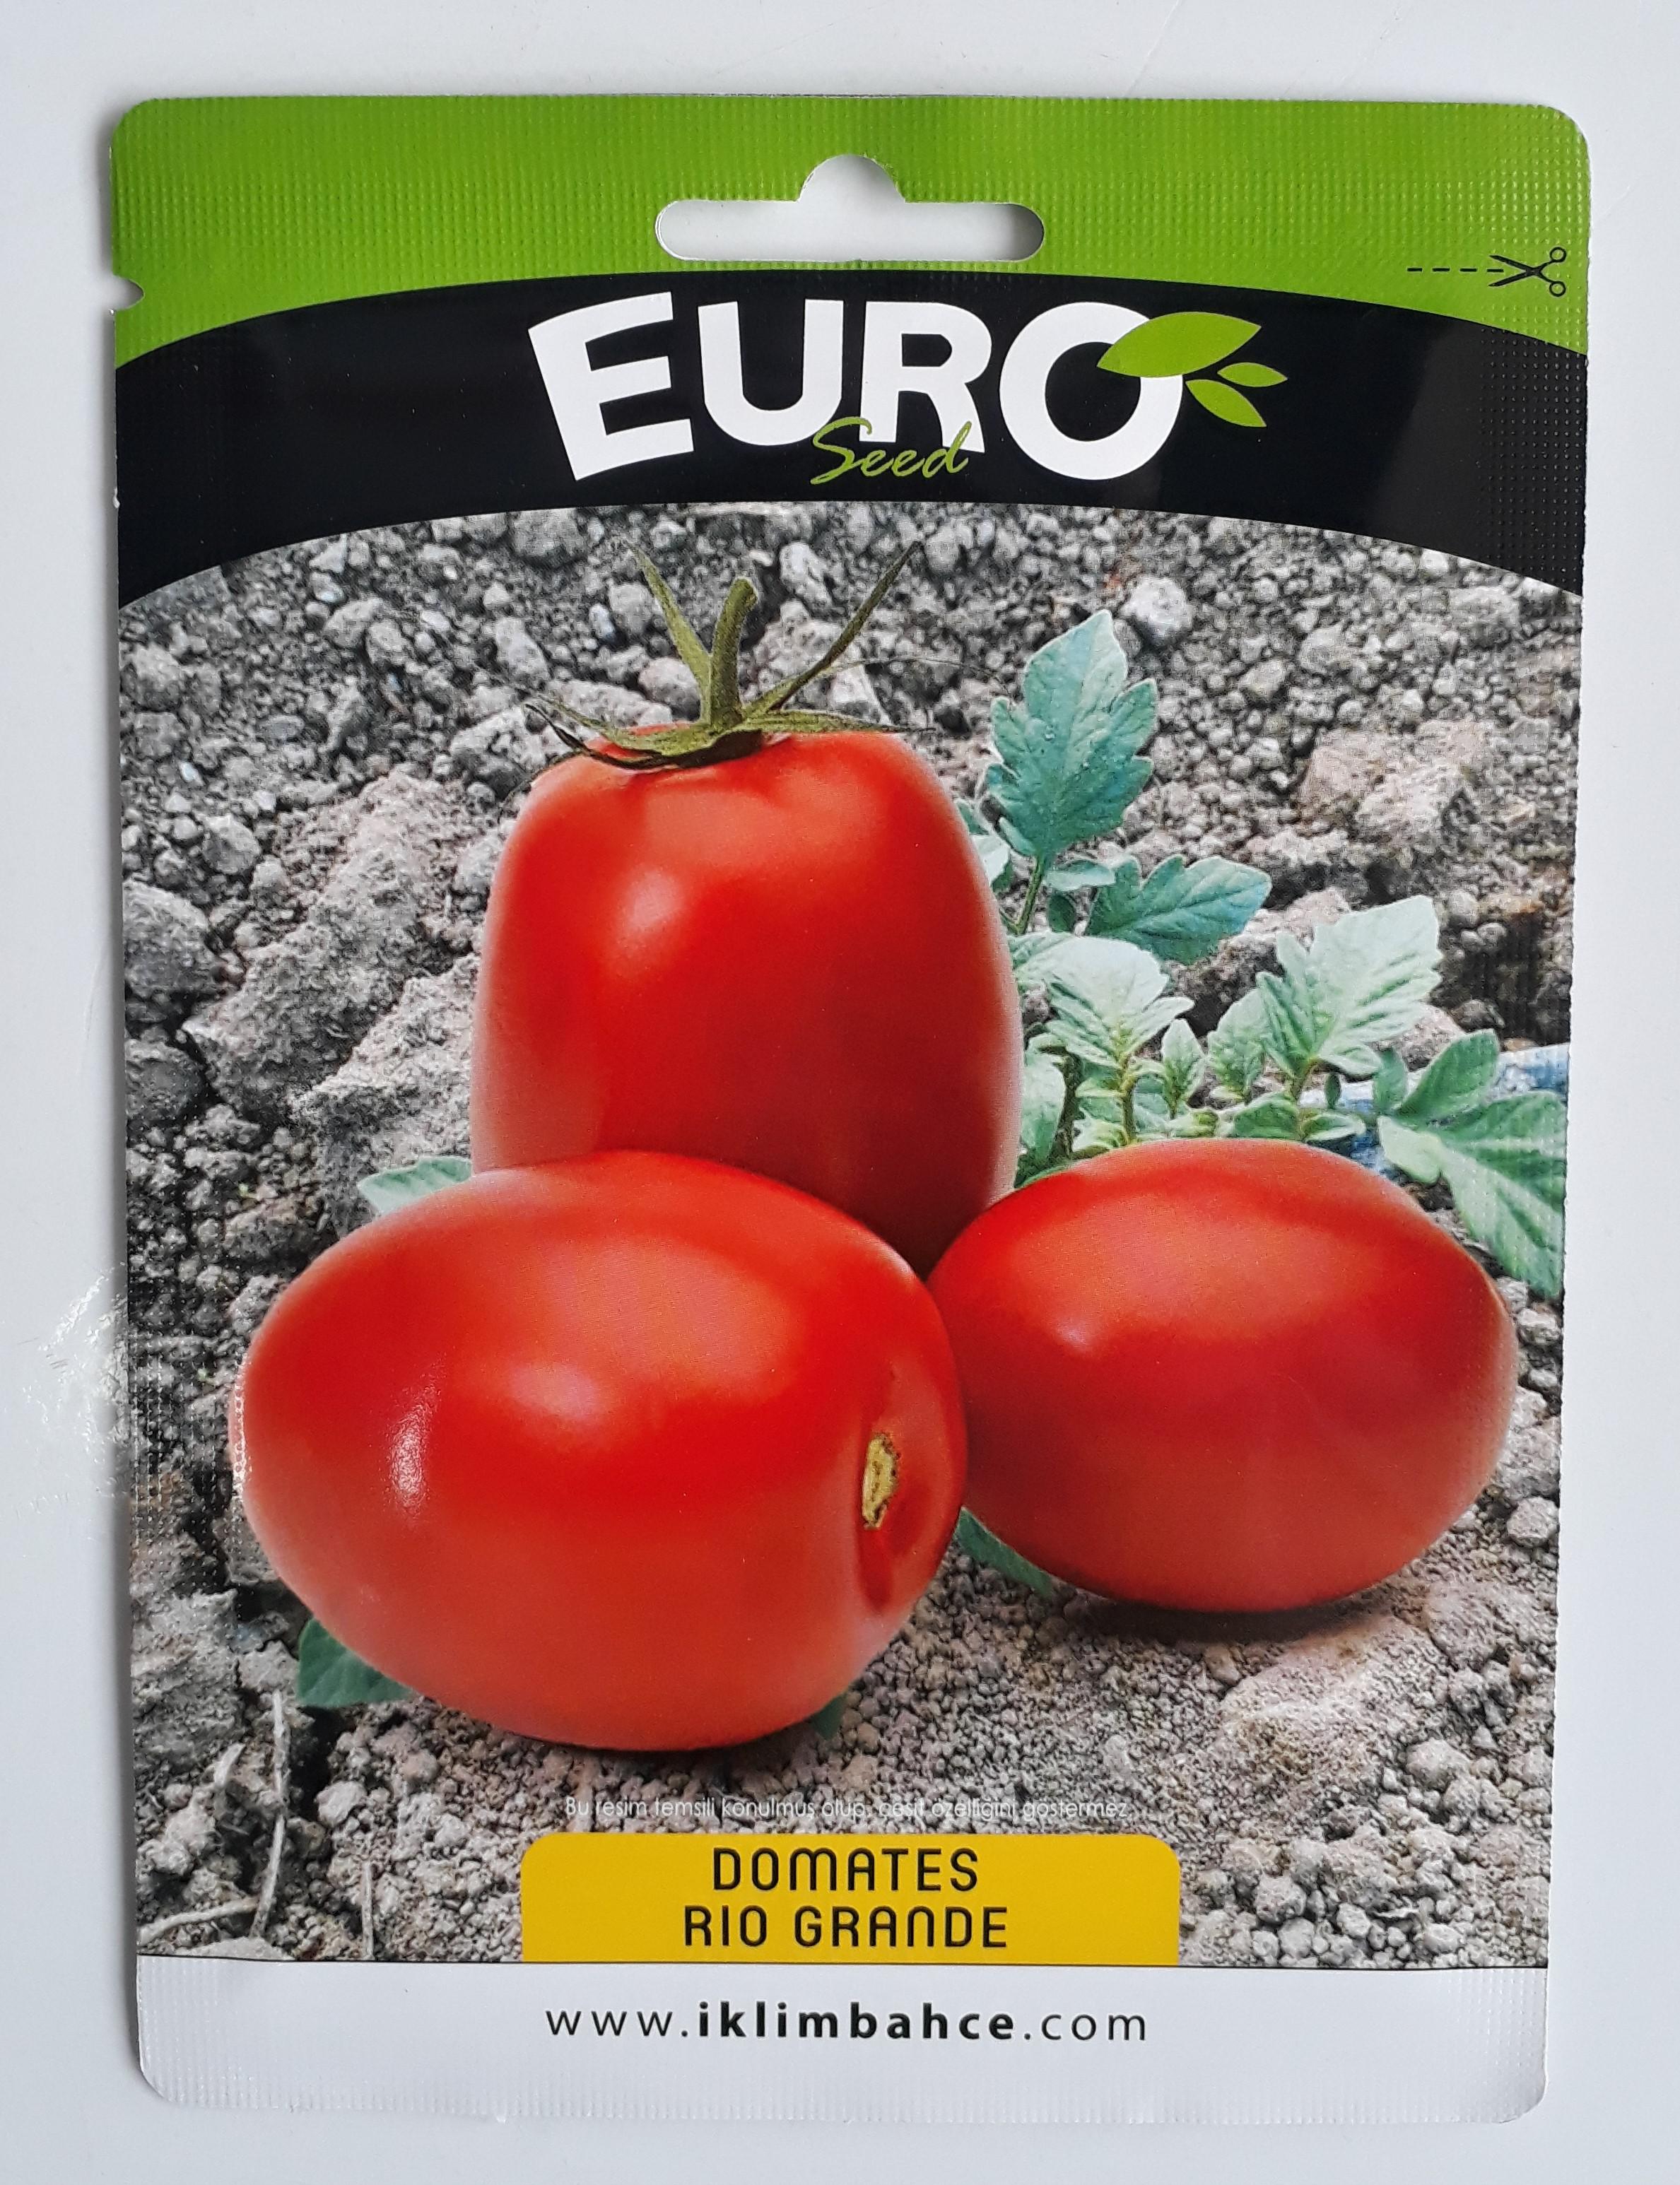 Domates tohumu - ABDULLAH BAŞOĞUL abdullahbasogul69@gmail.com tarafından verilen satılık domates tohumu ilanını ve diğer satılık domates tohumu ilanlarını tarimziraat.com adresinde bulabilirsiniz